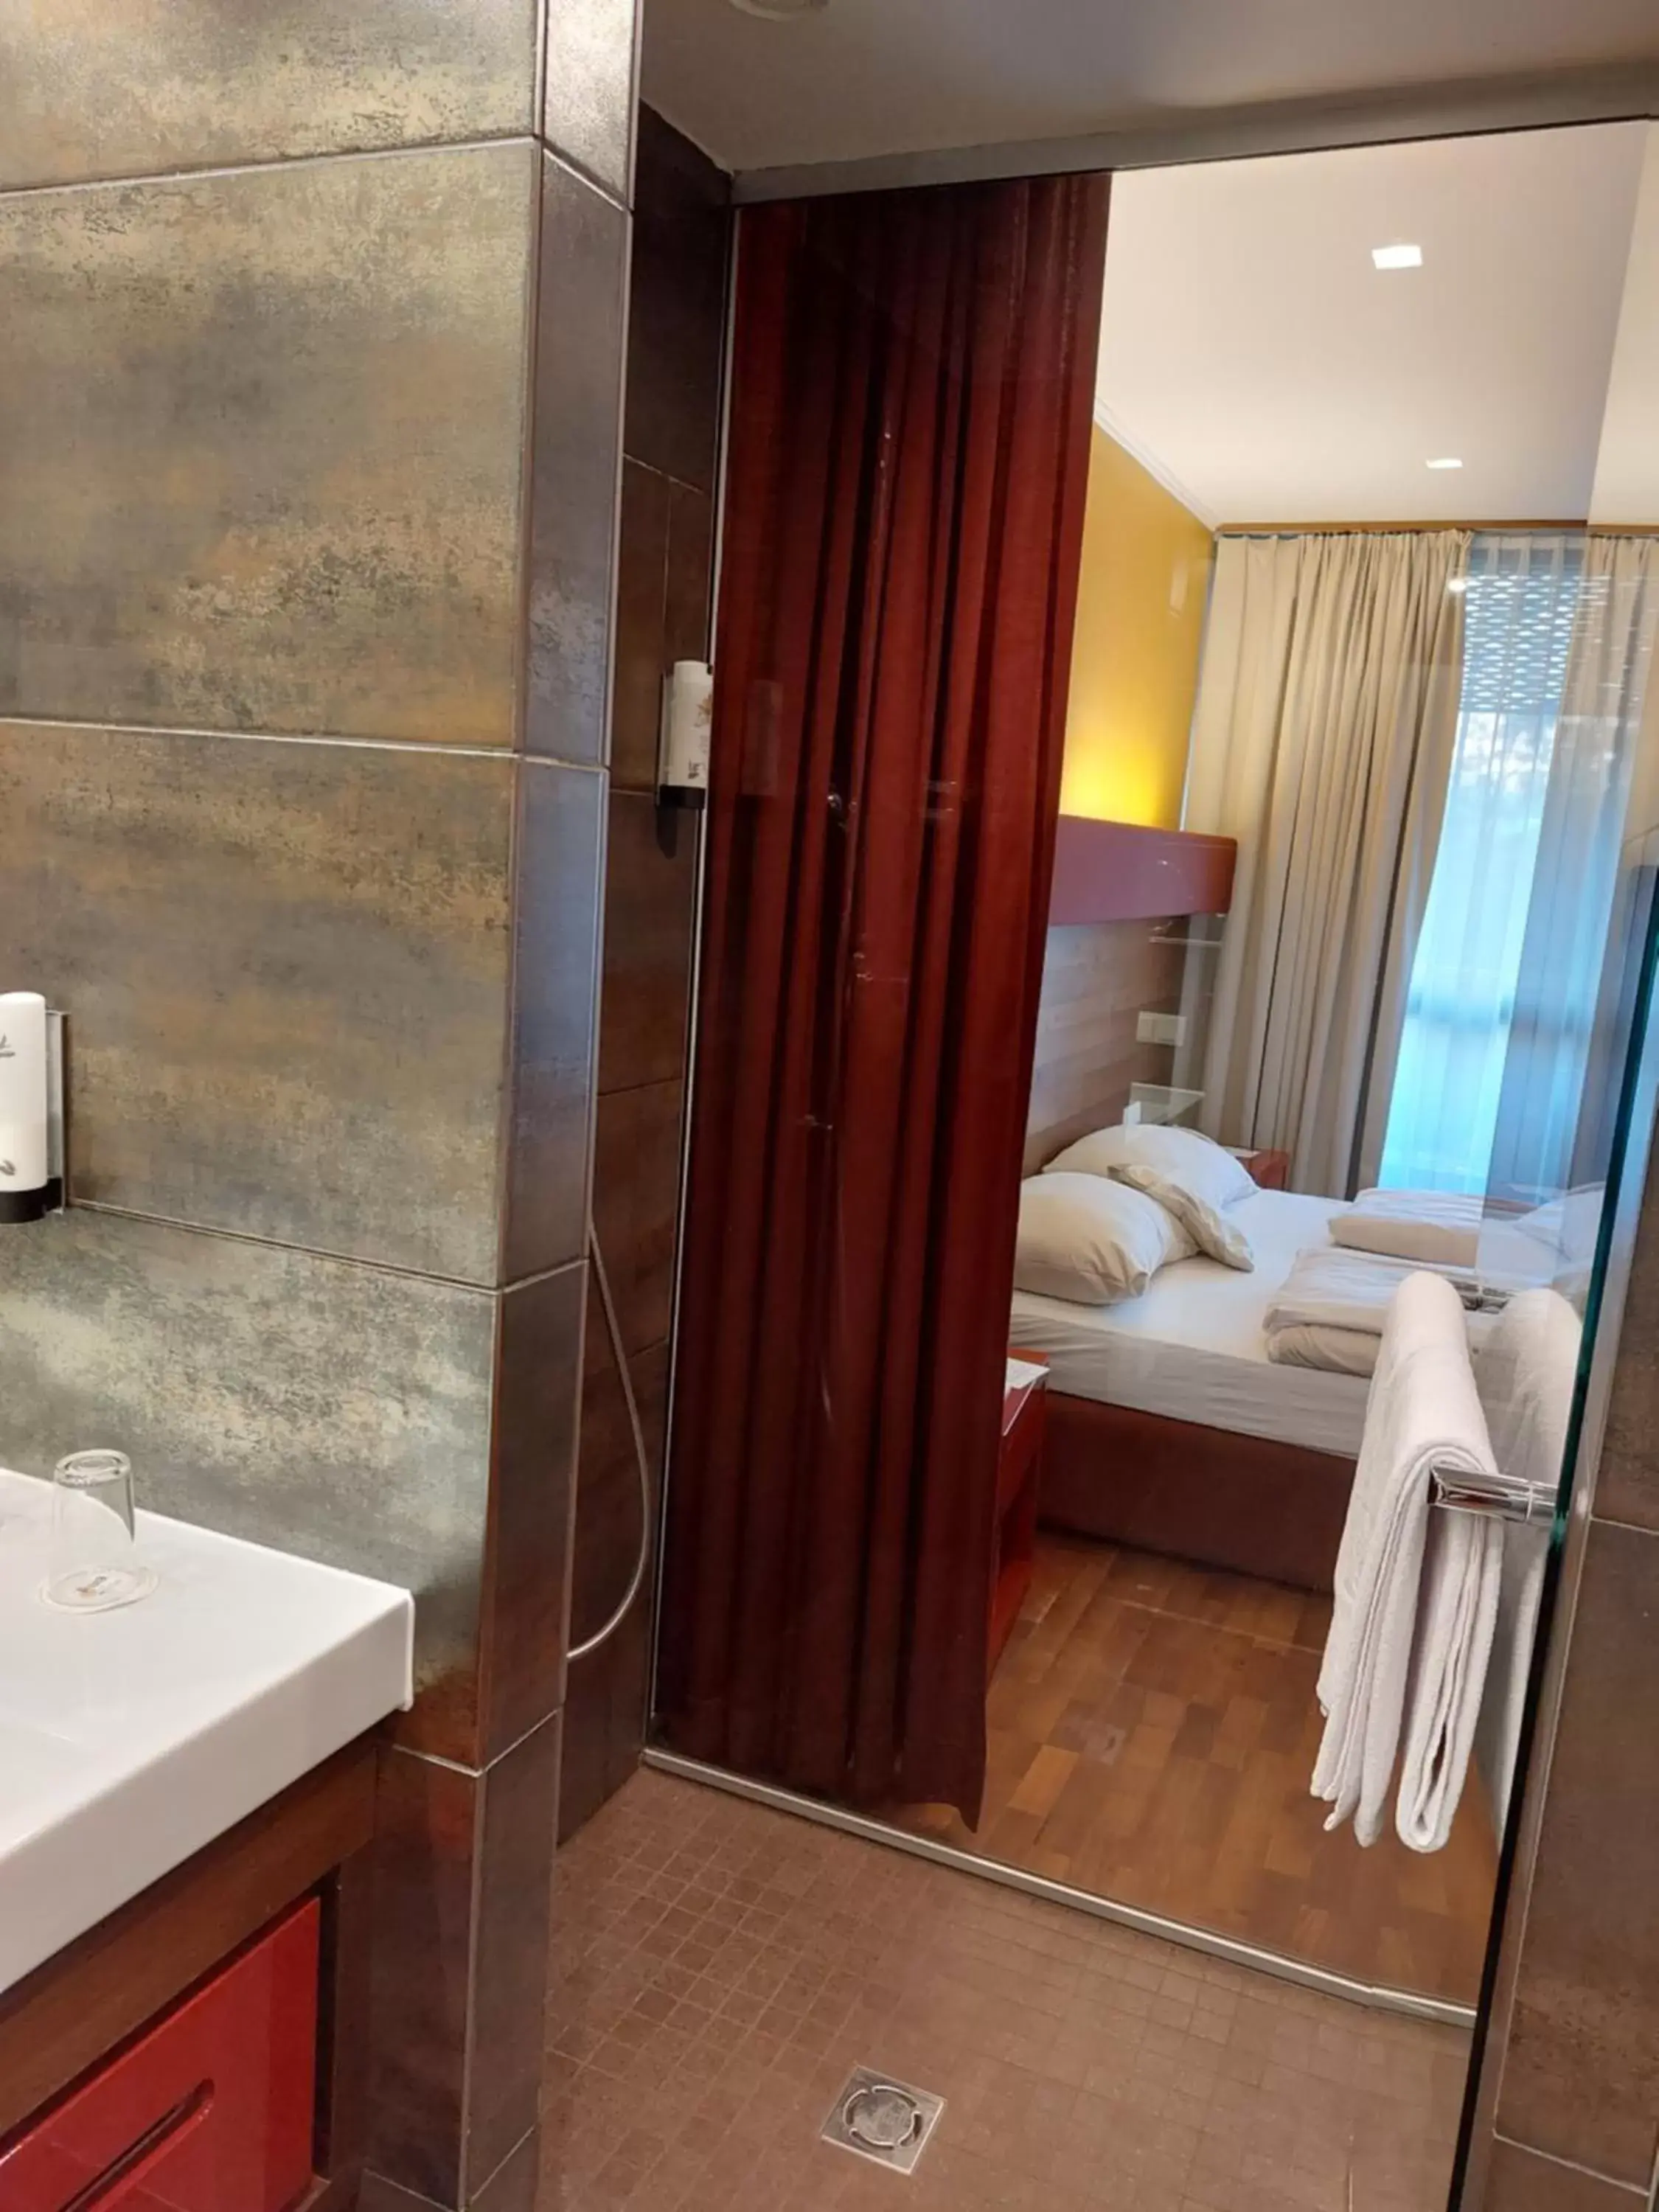 Bedroom, Bathroom in Asia Hotel & Spa Leoben